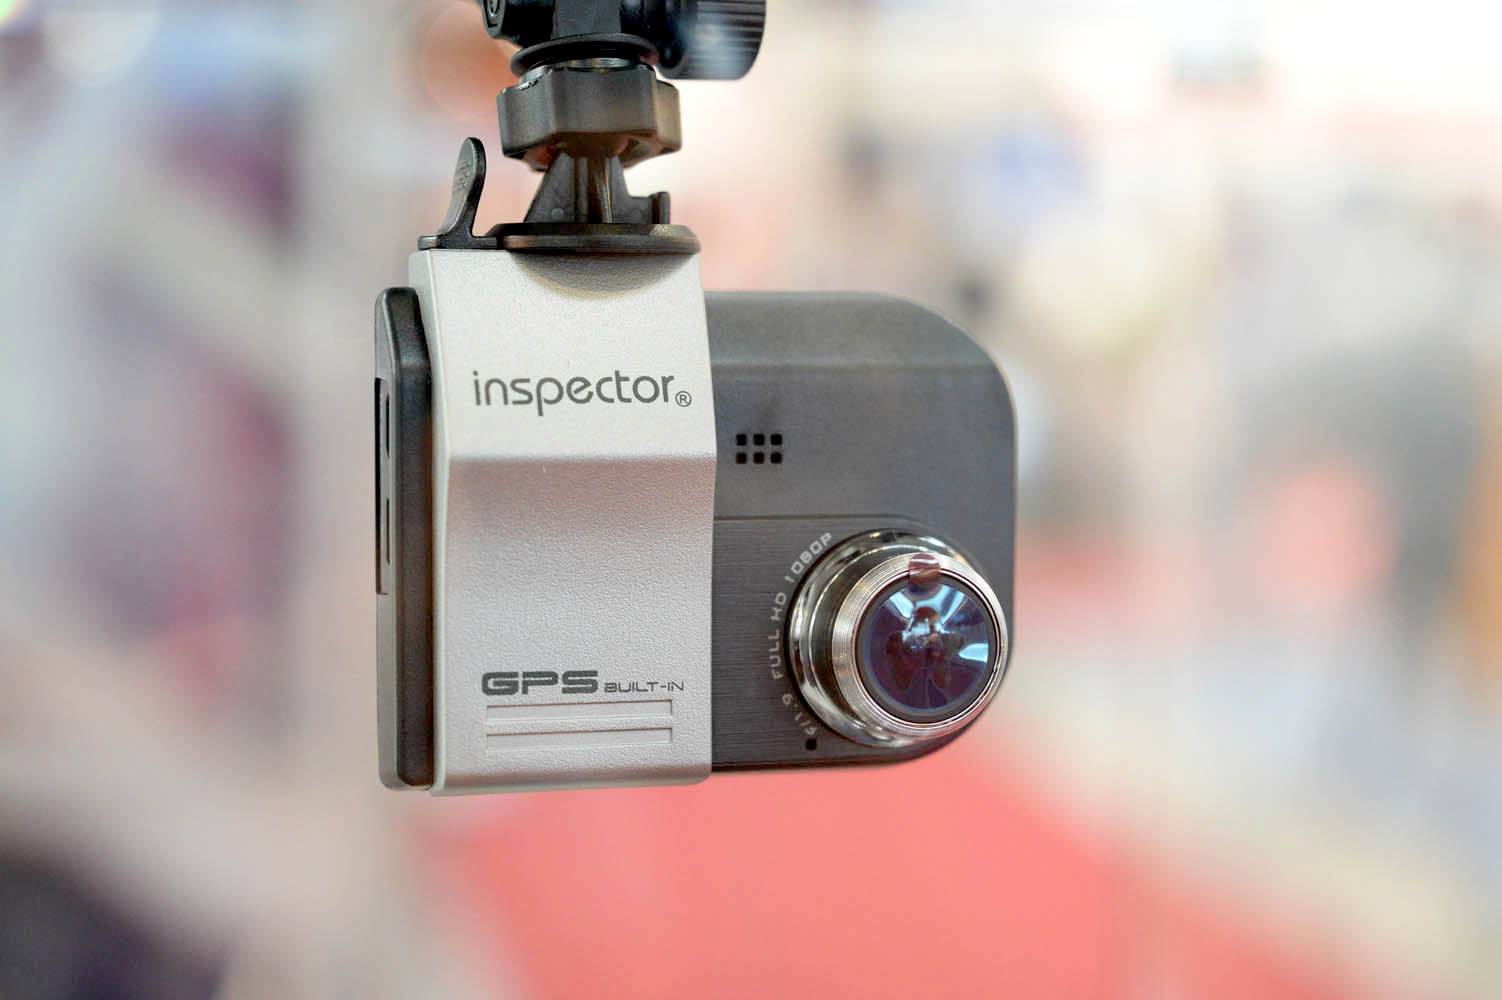 Топ-14 многофункциональных видеорегистраторов inspector (инспектор) - авто журнал карлазарт